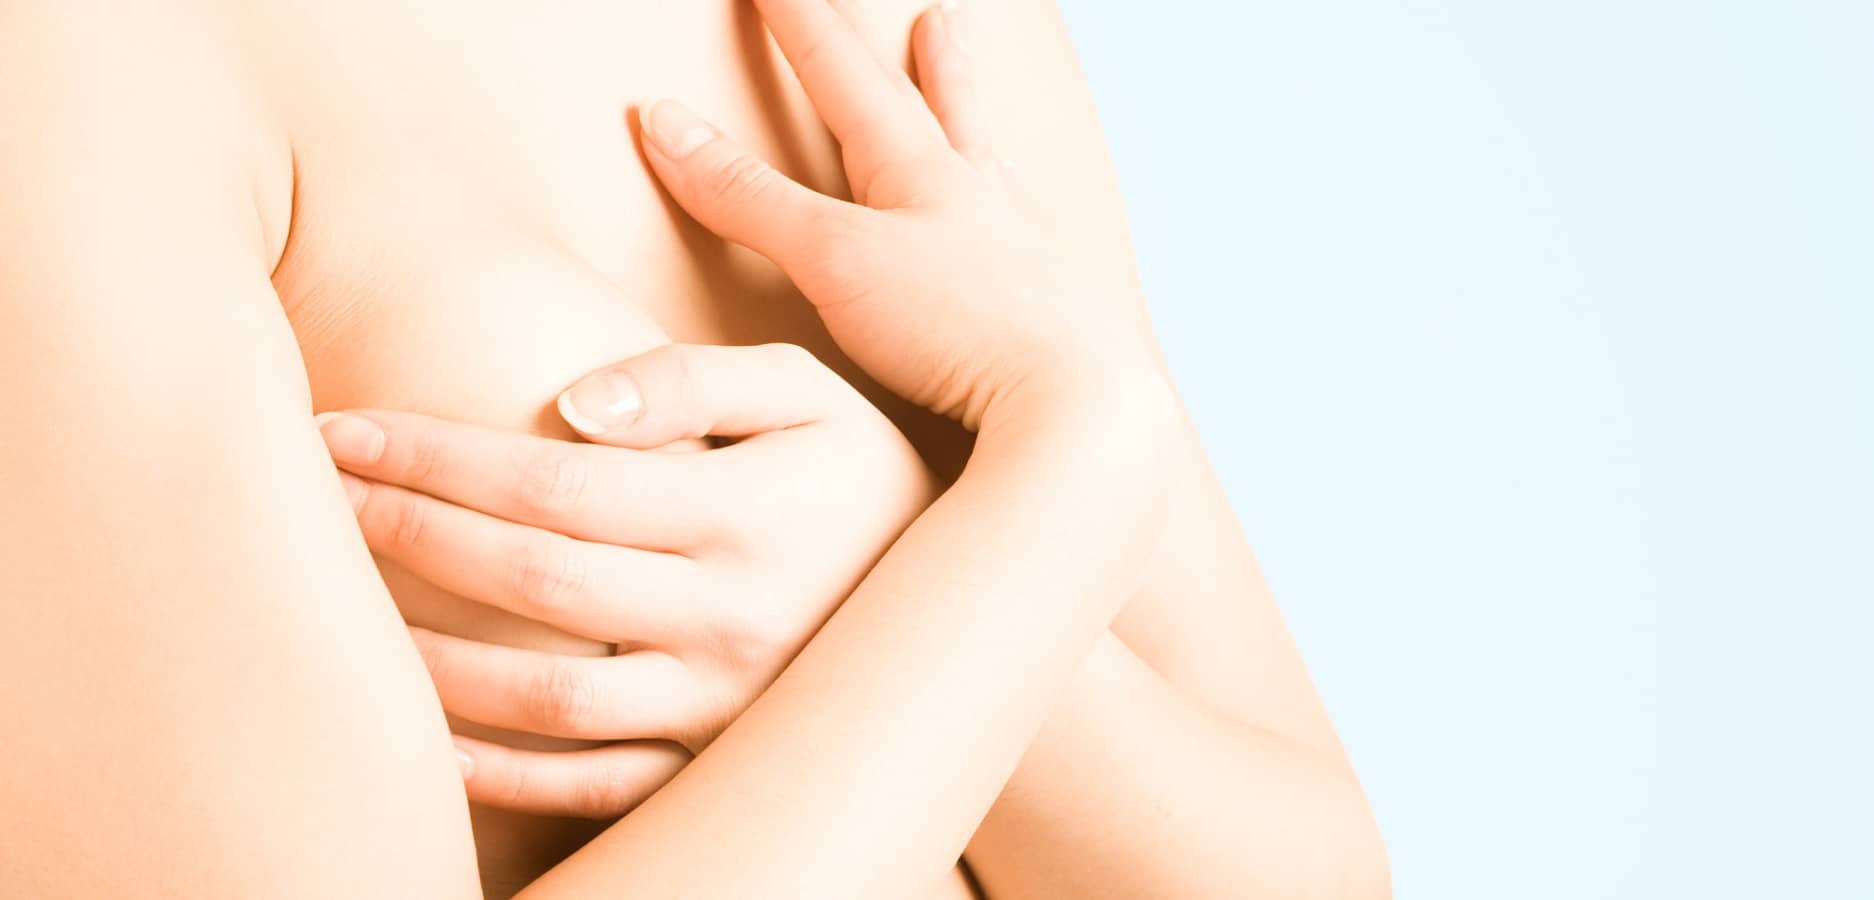 Reprise de poids après une réduction mammaire : quel risque ? | Dr Sarfati | Paris